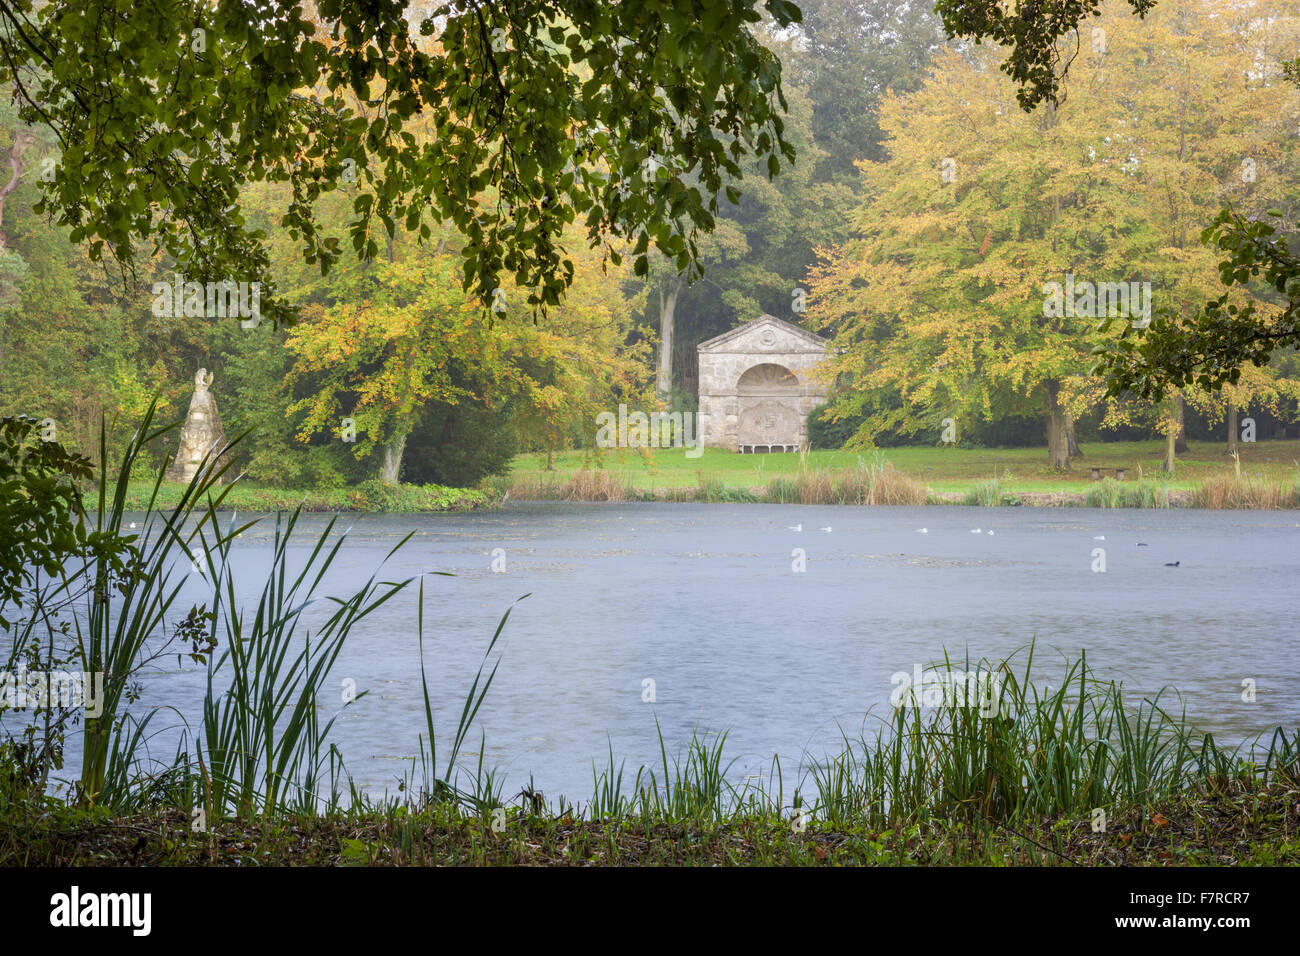 La alcoba de guijarros y Congreve Monumento en Stowe, Buckinghamshire. Stowe es un jardín del siglo XVIII, e incluye más de 40 templos y monumentos históricos. Foto de stock